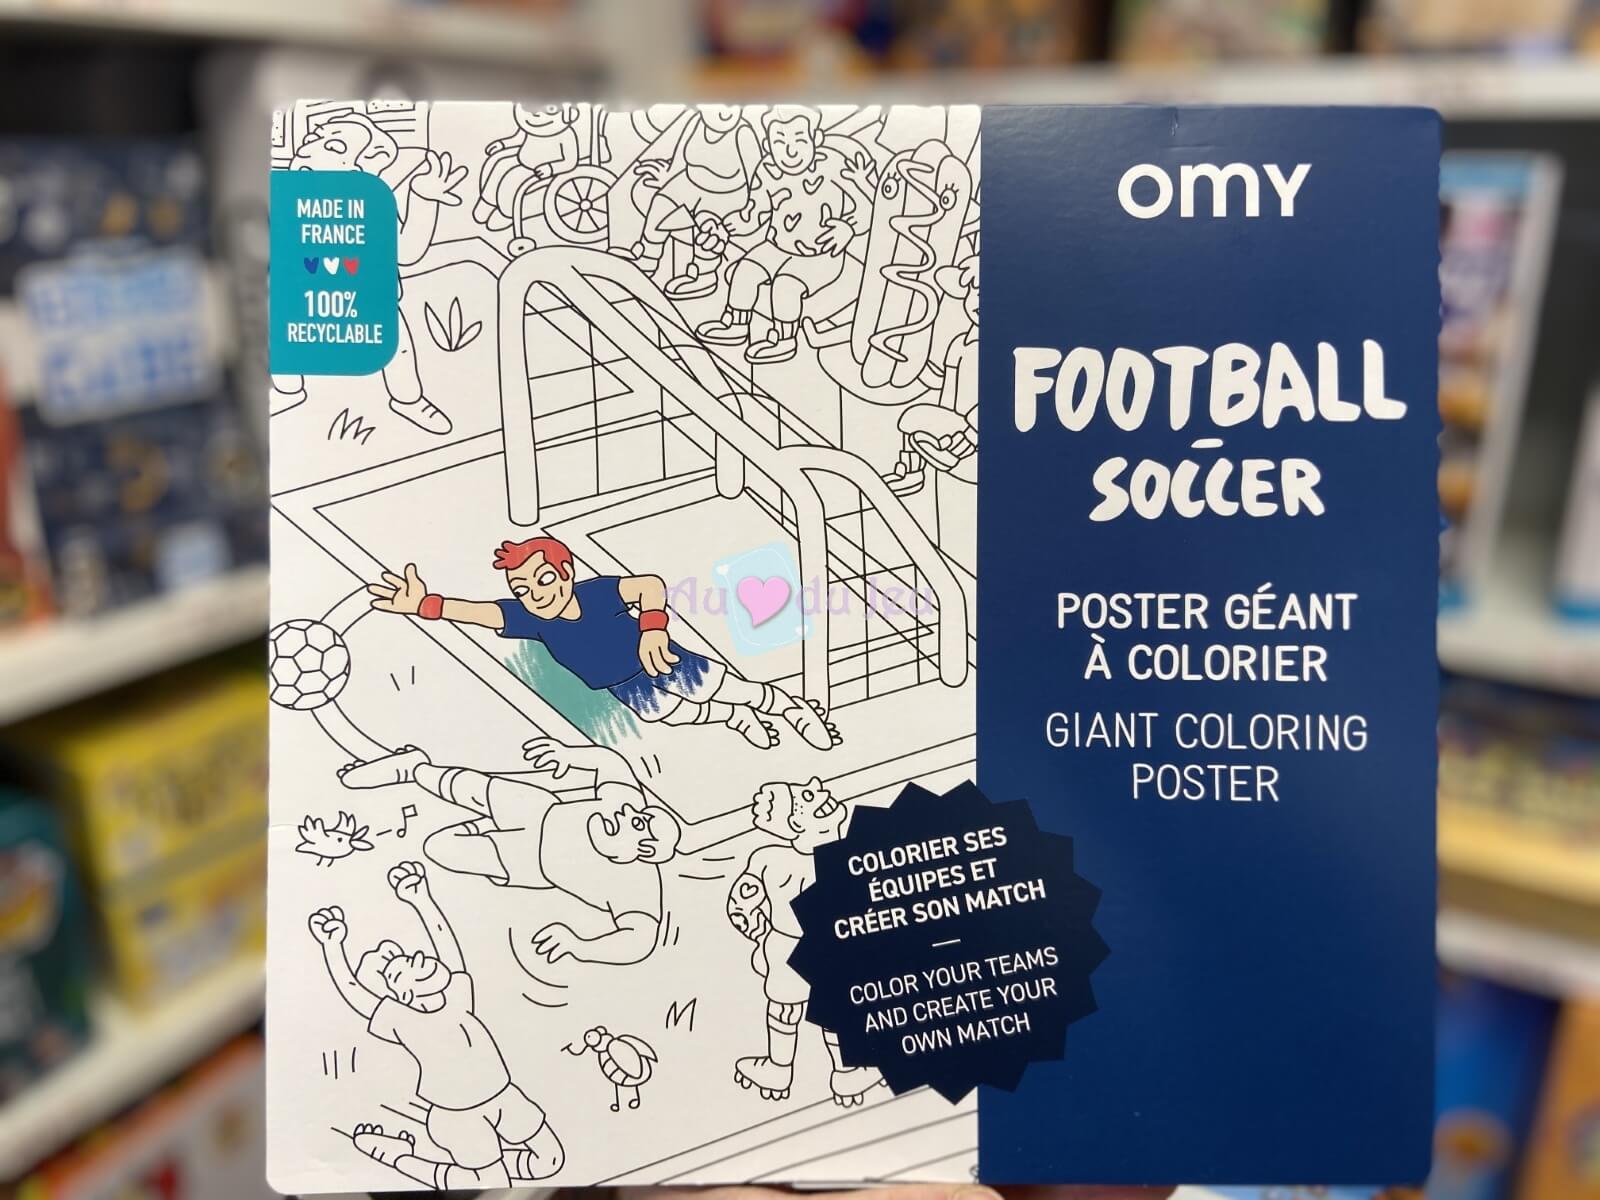 Poster Géant A Colorier Football